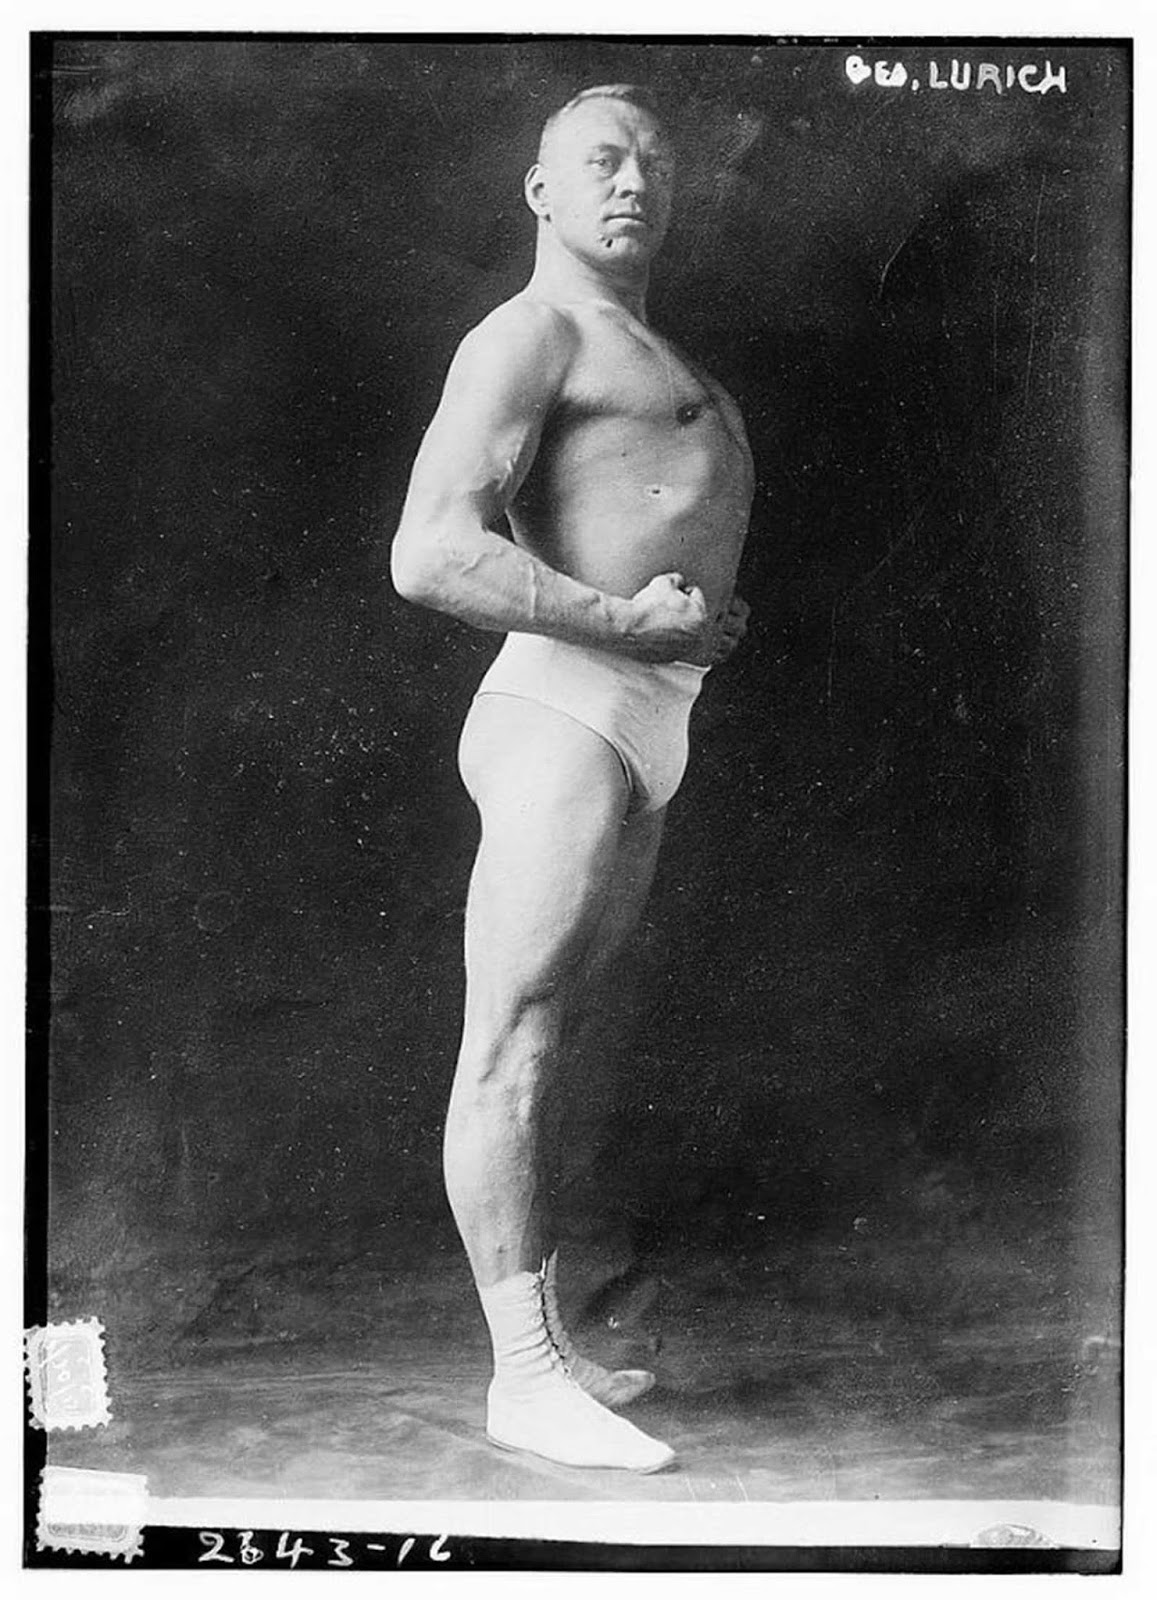 Georg Lurich, circa 1910.